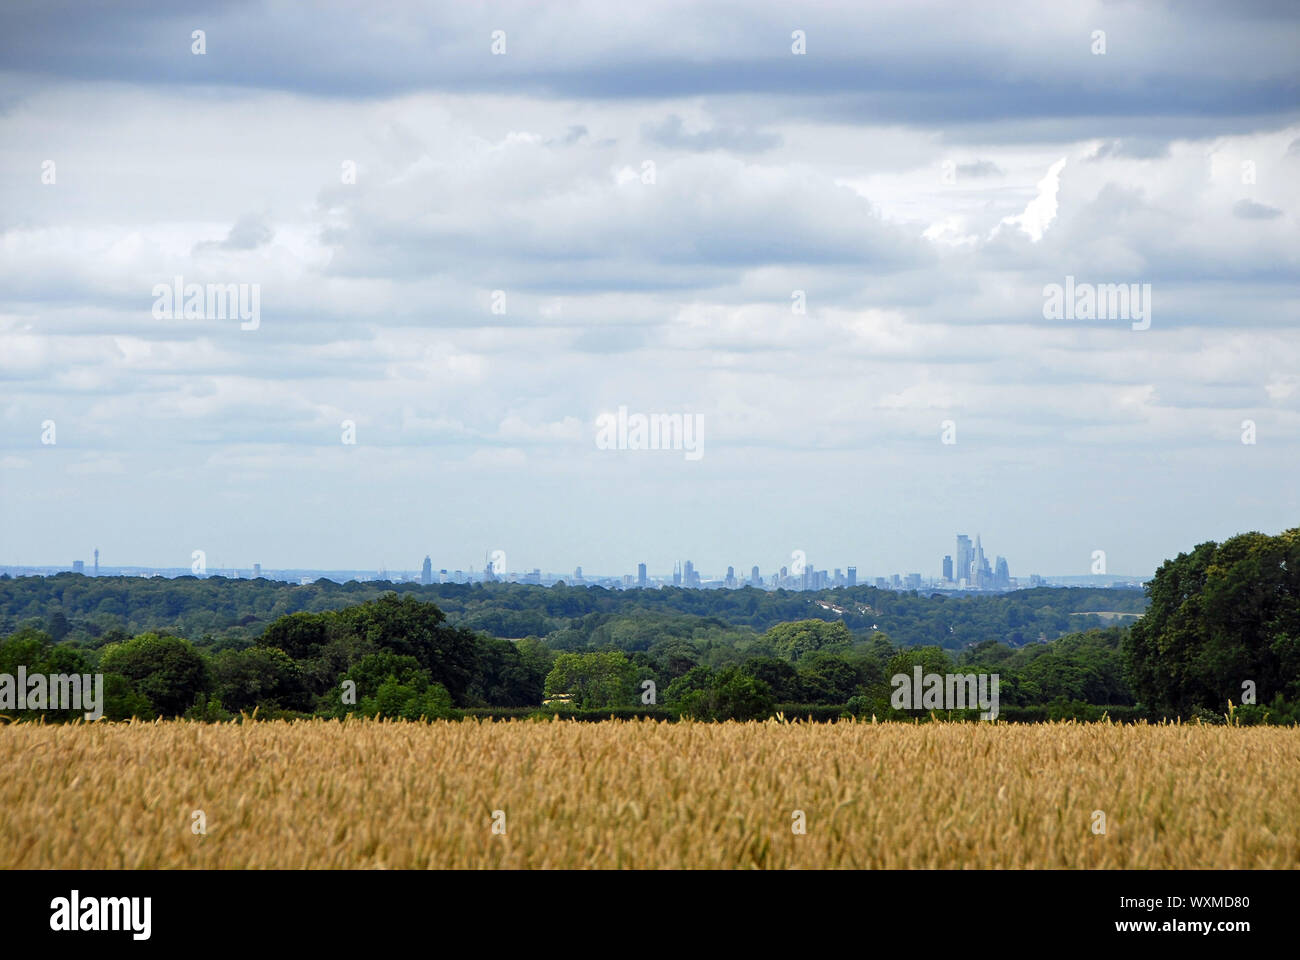 Londres desde las llanuras del norte en Reigate, Surrey. Skyline londinense con campos. Londres está rodeada por un cinturón verde de bosques y campos. Vista de Londres. Foto de stock